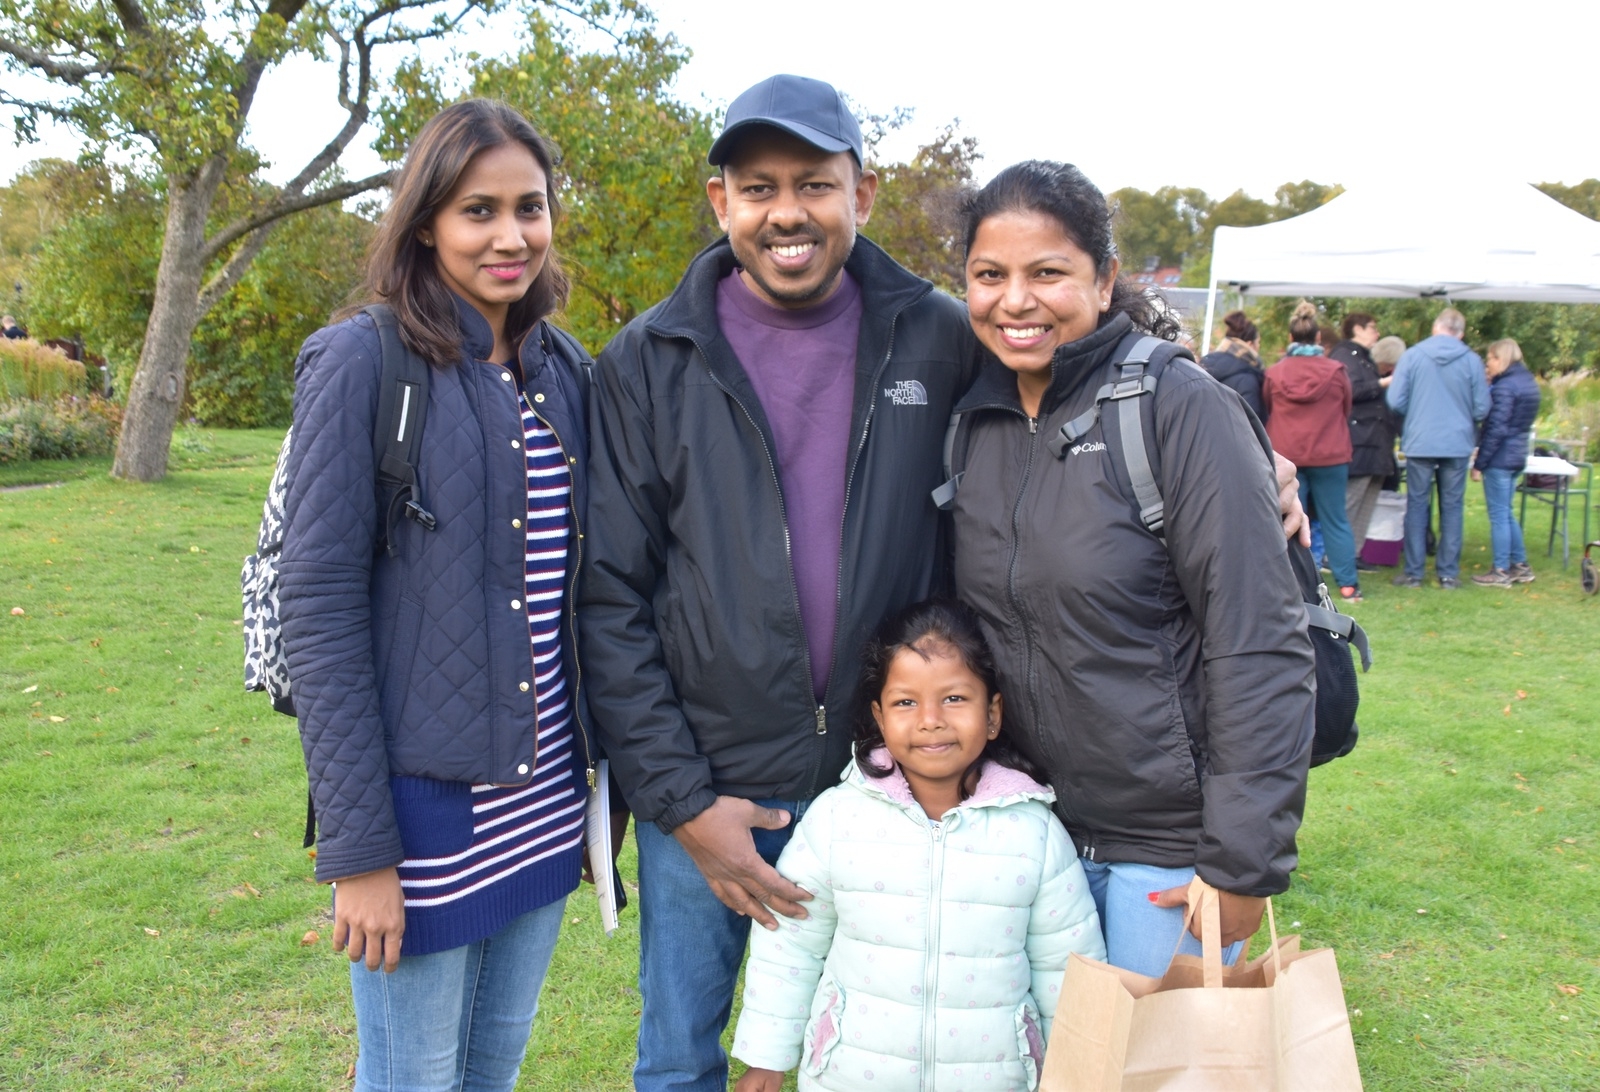 Familjen Rathnayake tillsammans med Yashoda Wijesekara från Sri Lanka trivdes bra på skördefesten.